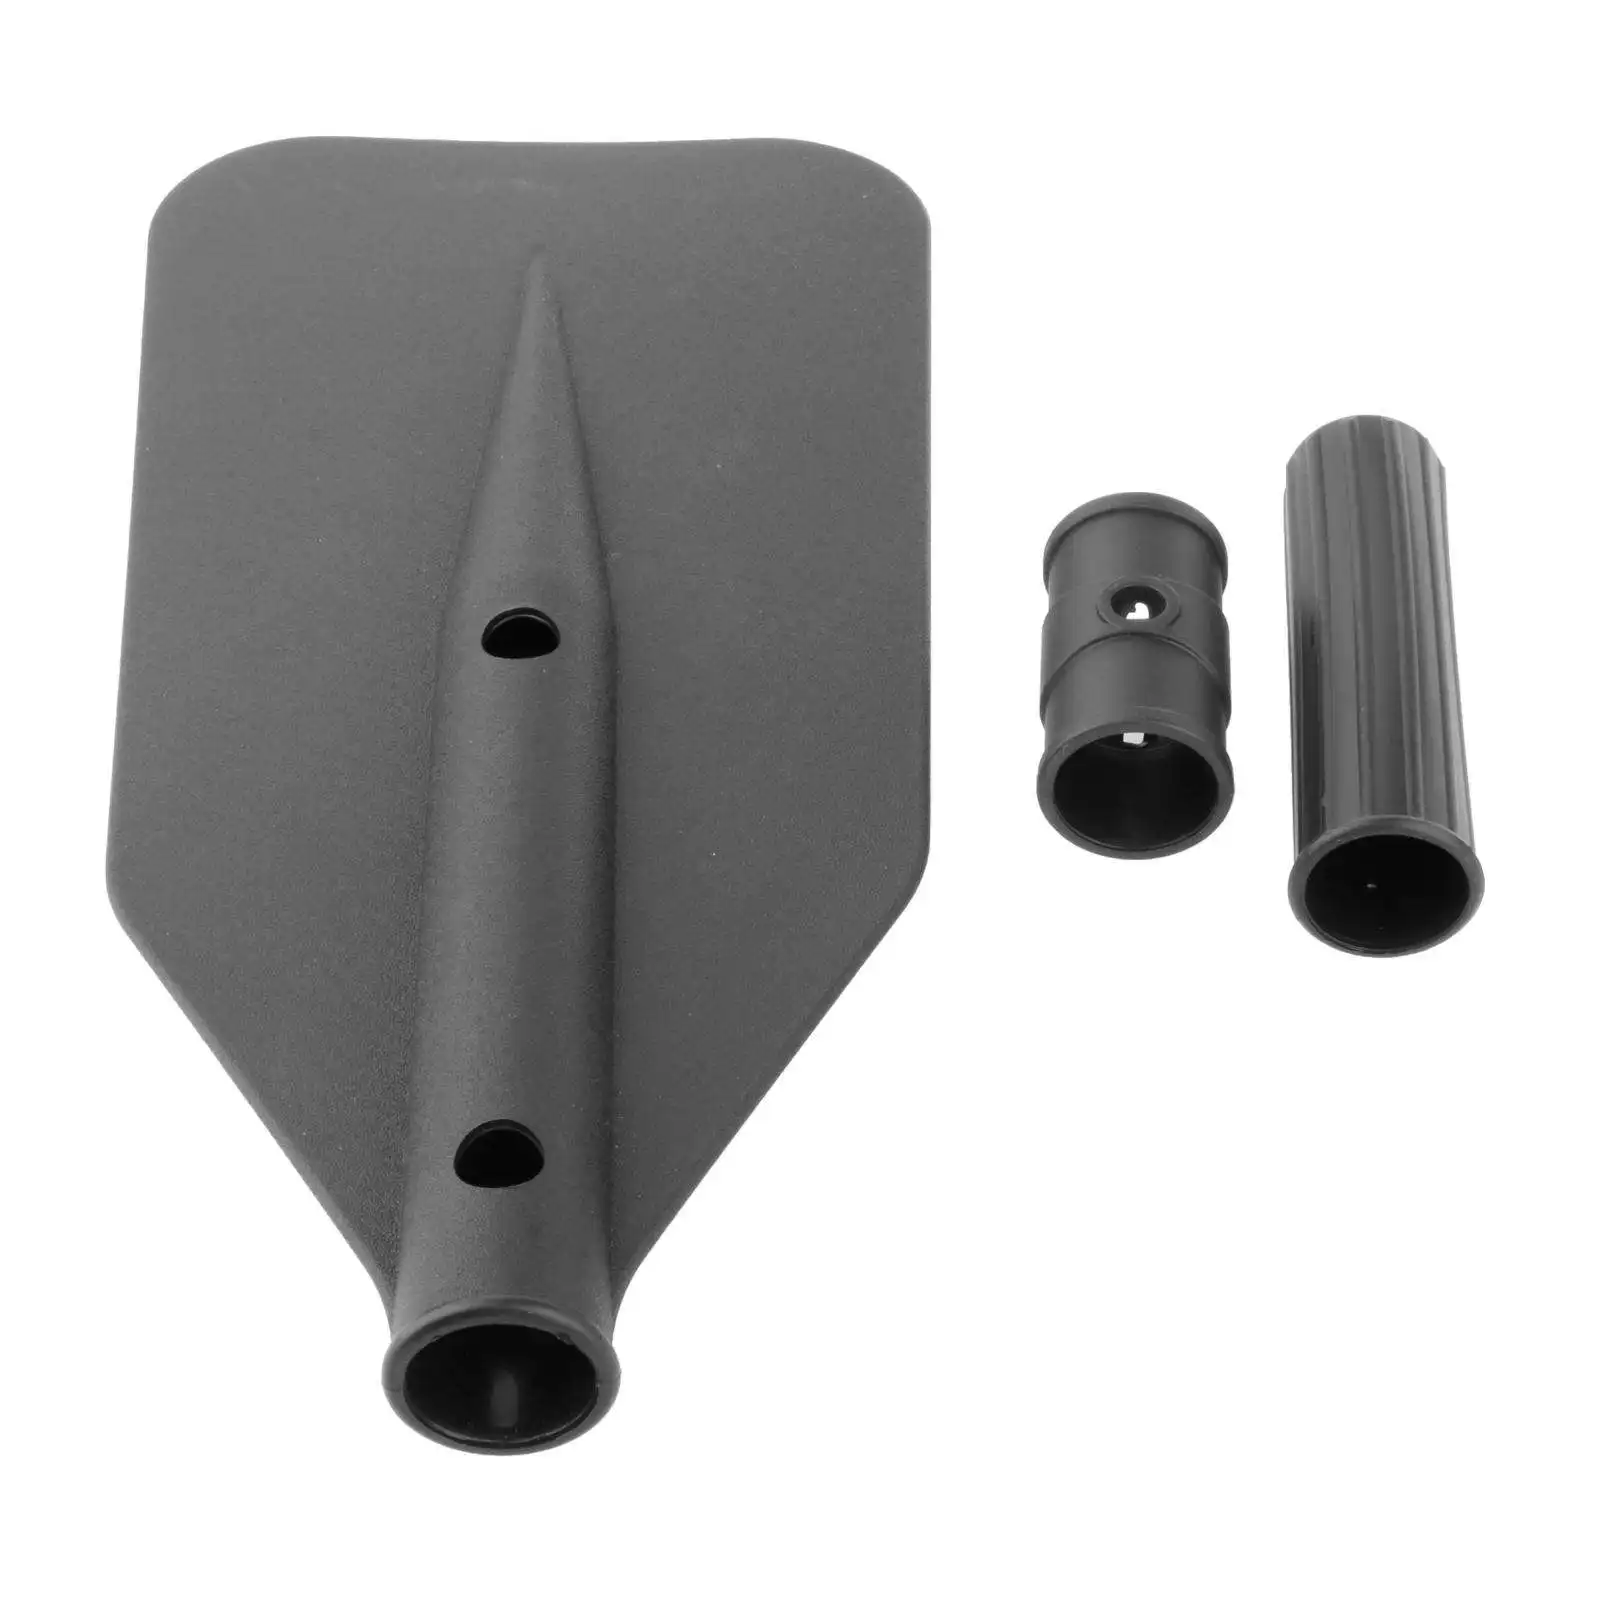 3Pcs/set Lightweight Rubber Kayak Boat Paddle Blade Leaf Accessories Black